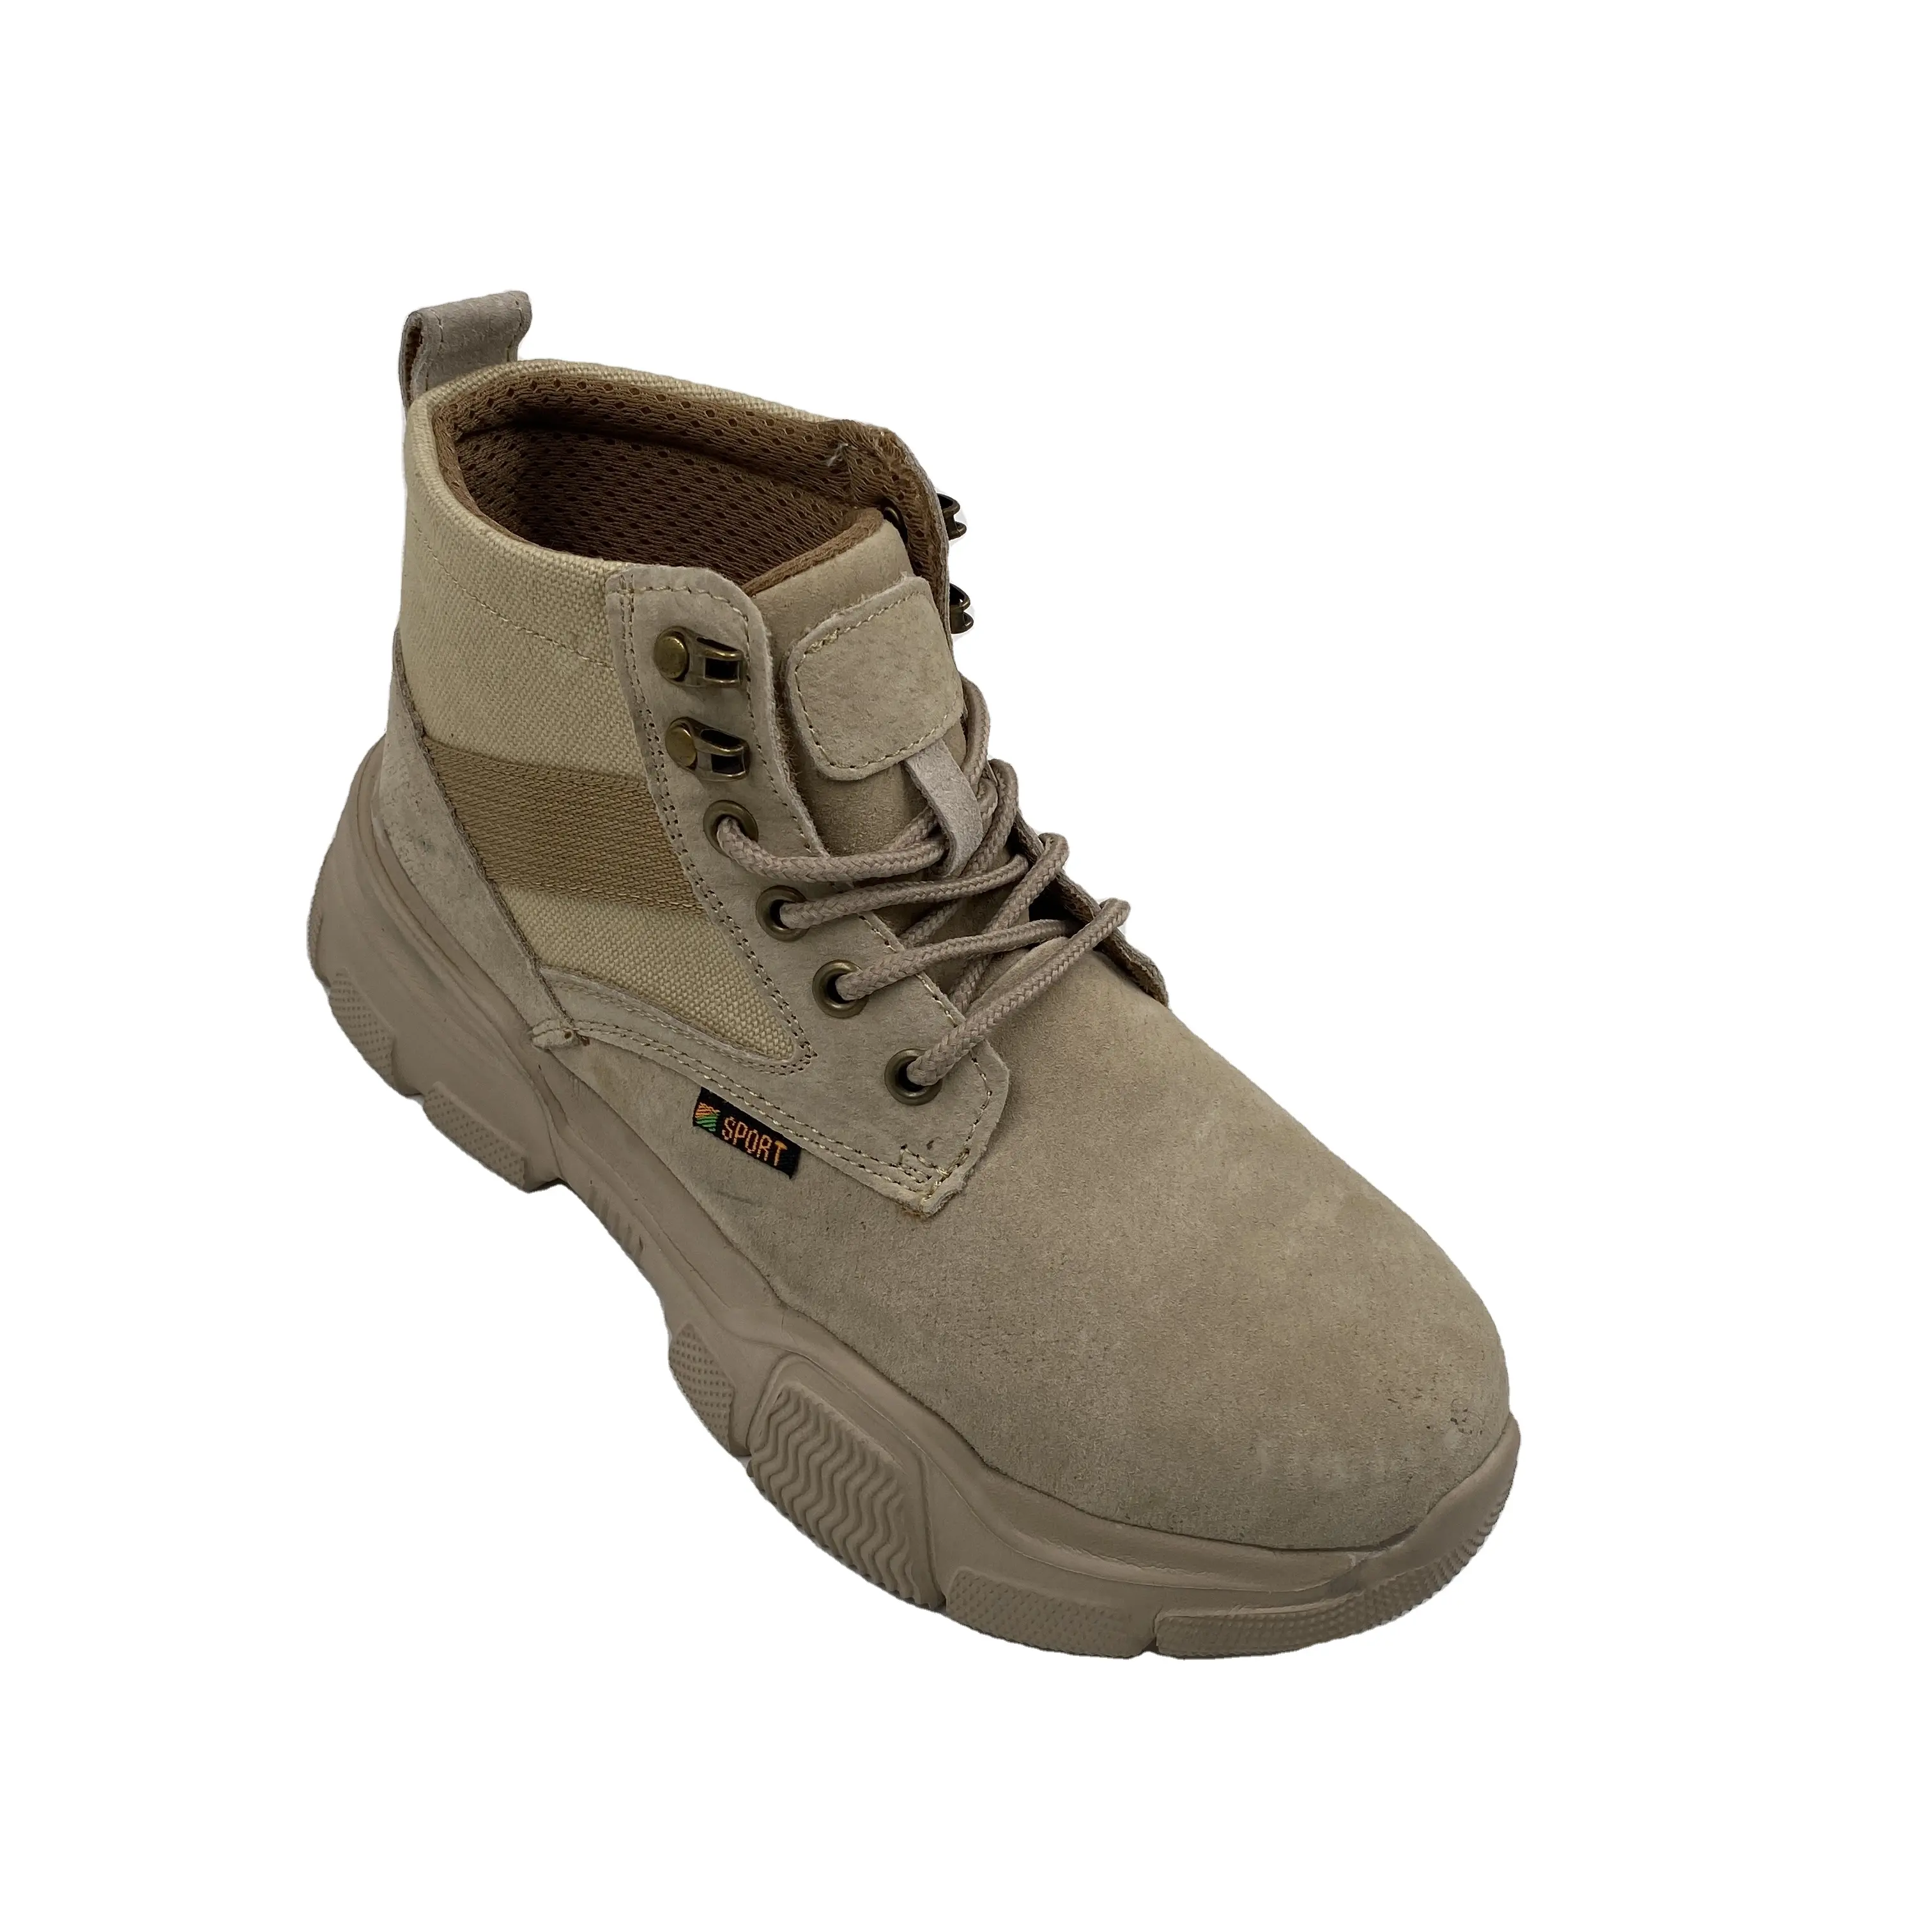 Prix bon marché d'usine de chaussures de sécurité en cuir PU pour hommes bottes de travail à bout en acier pour hommes